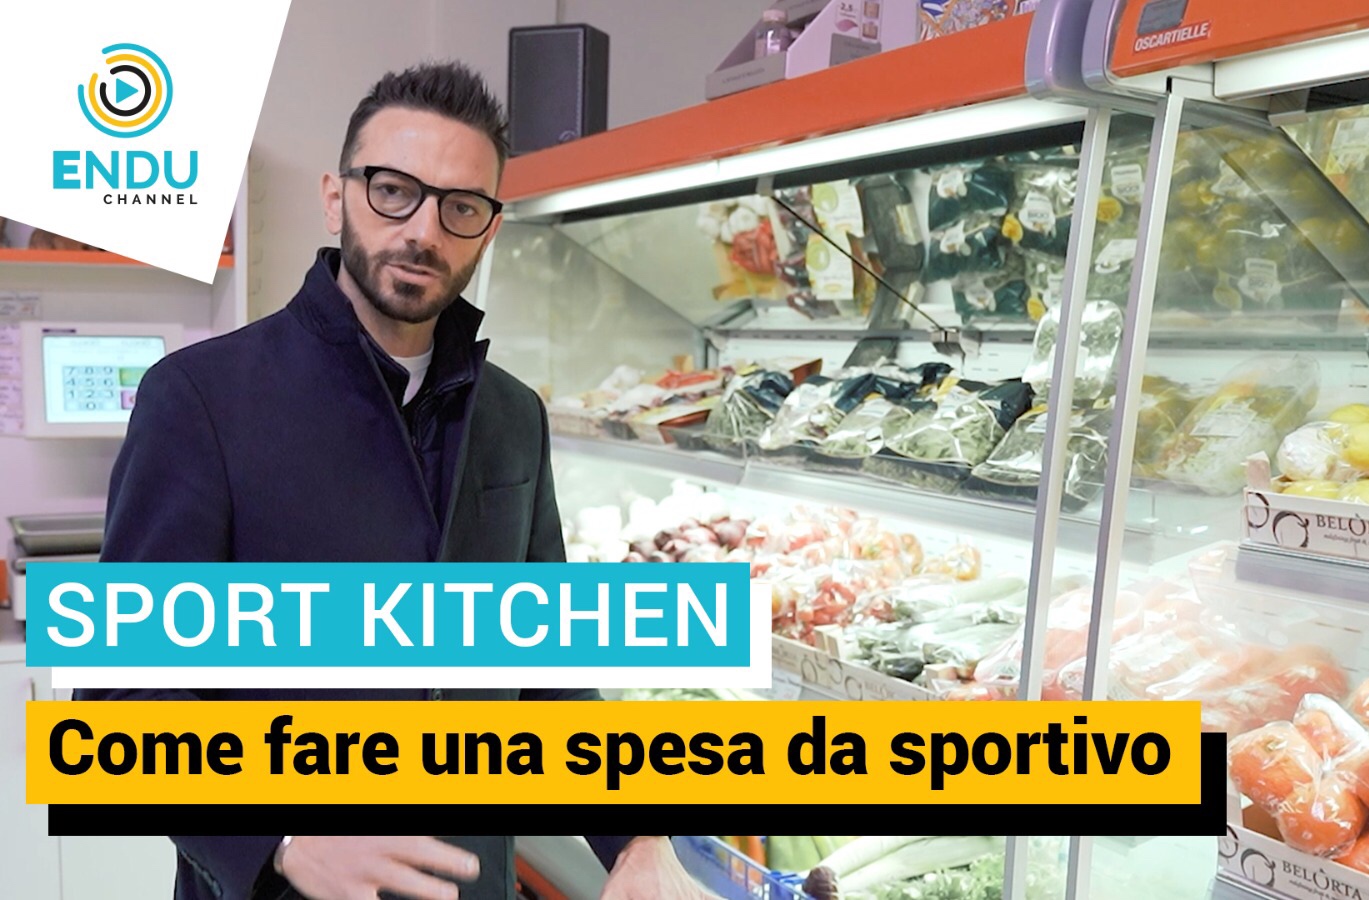 Sport Kitchen, come fare la spesa da sportivo